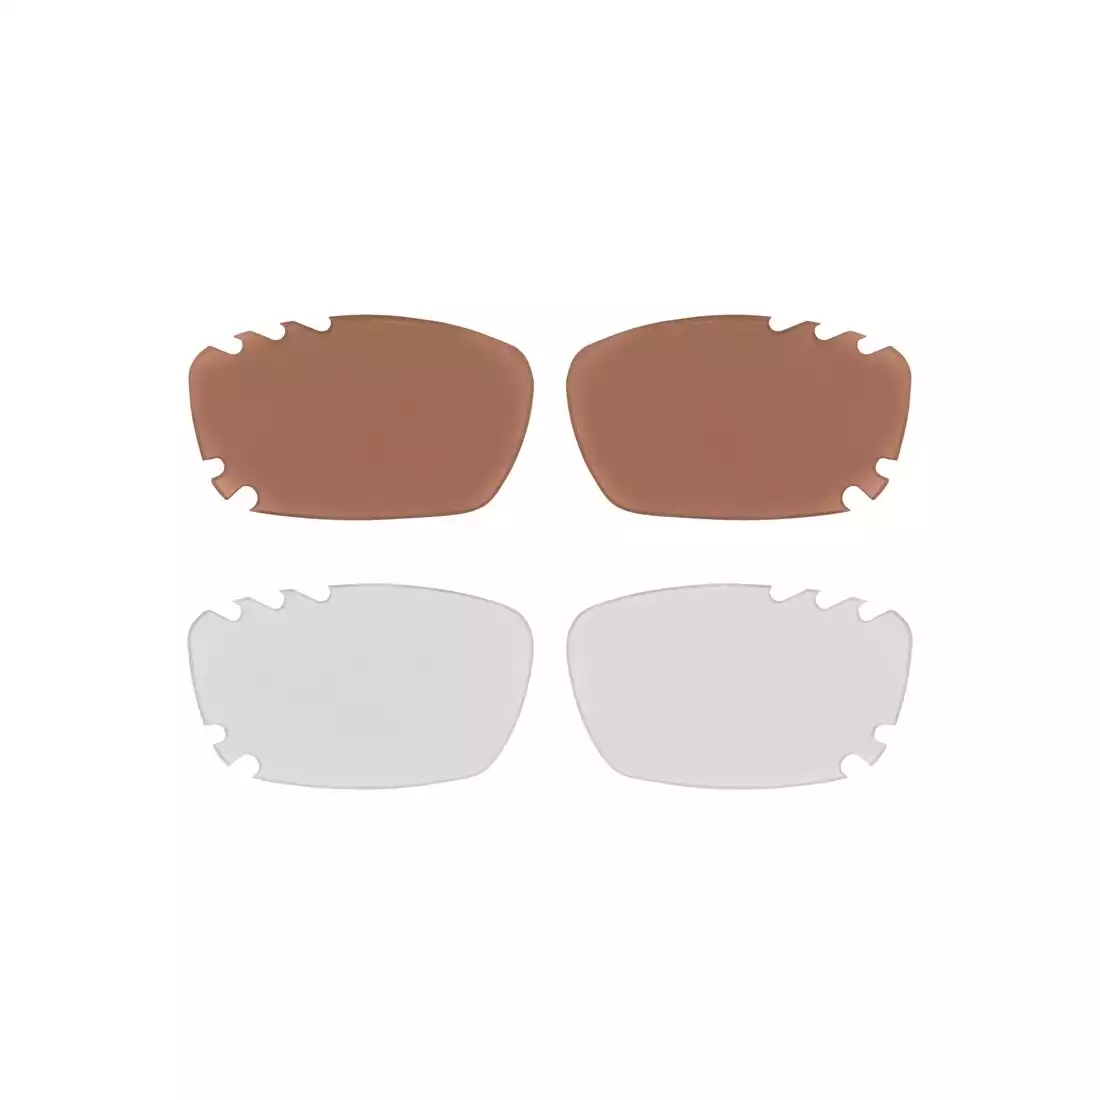 FORCE VISION okulary z wymiennymi szkłami białe 90970